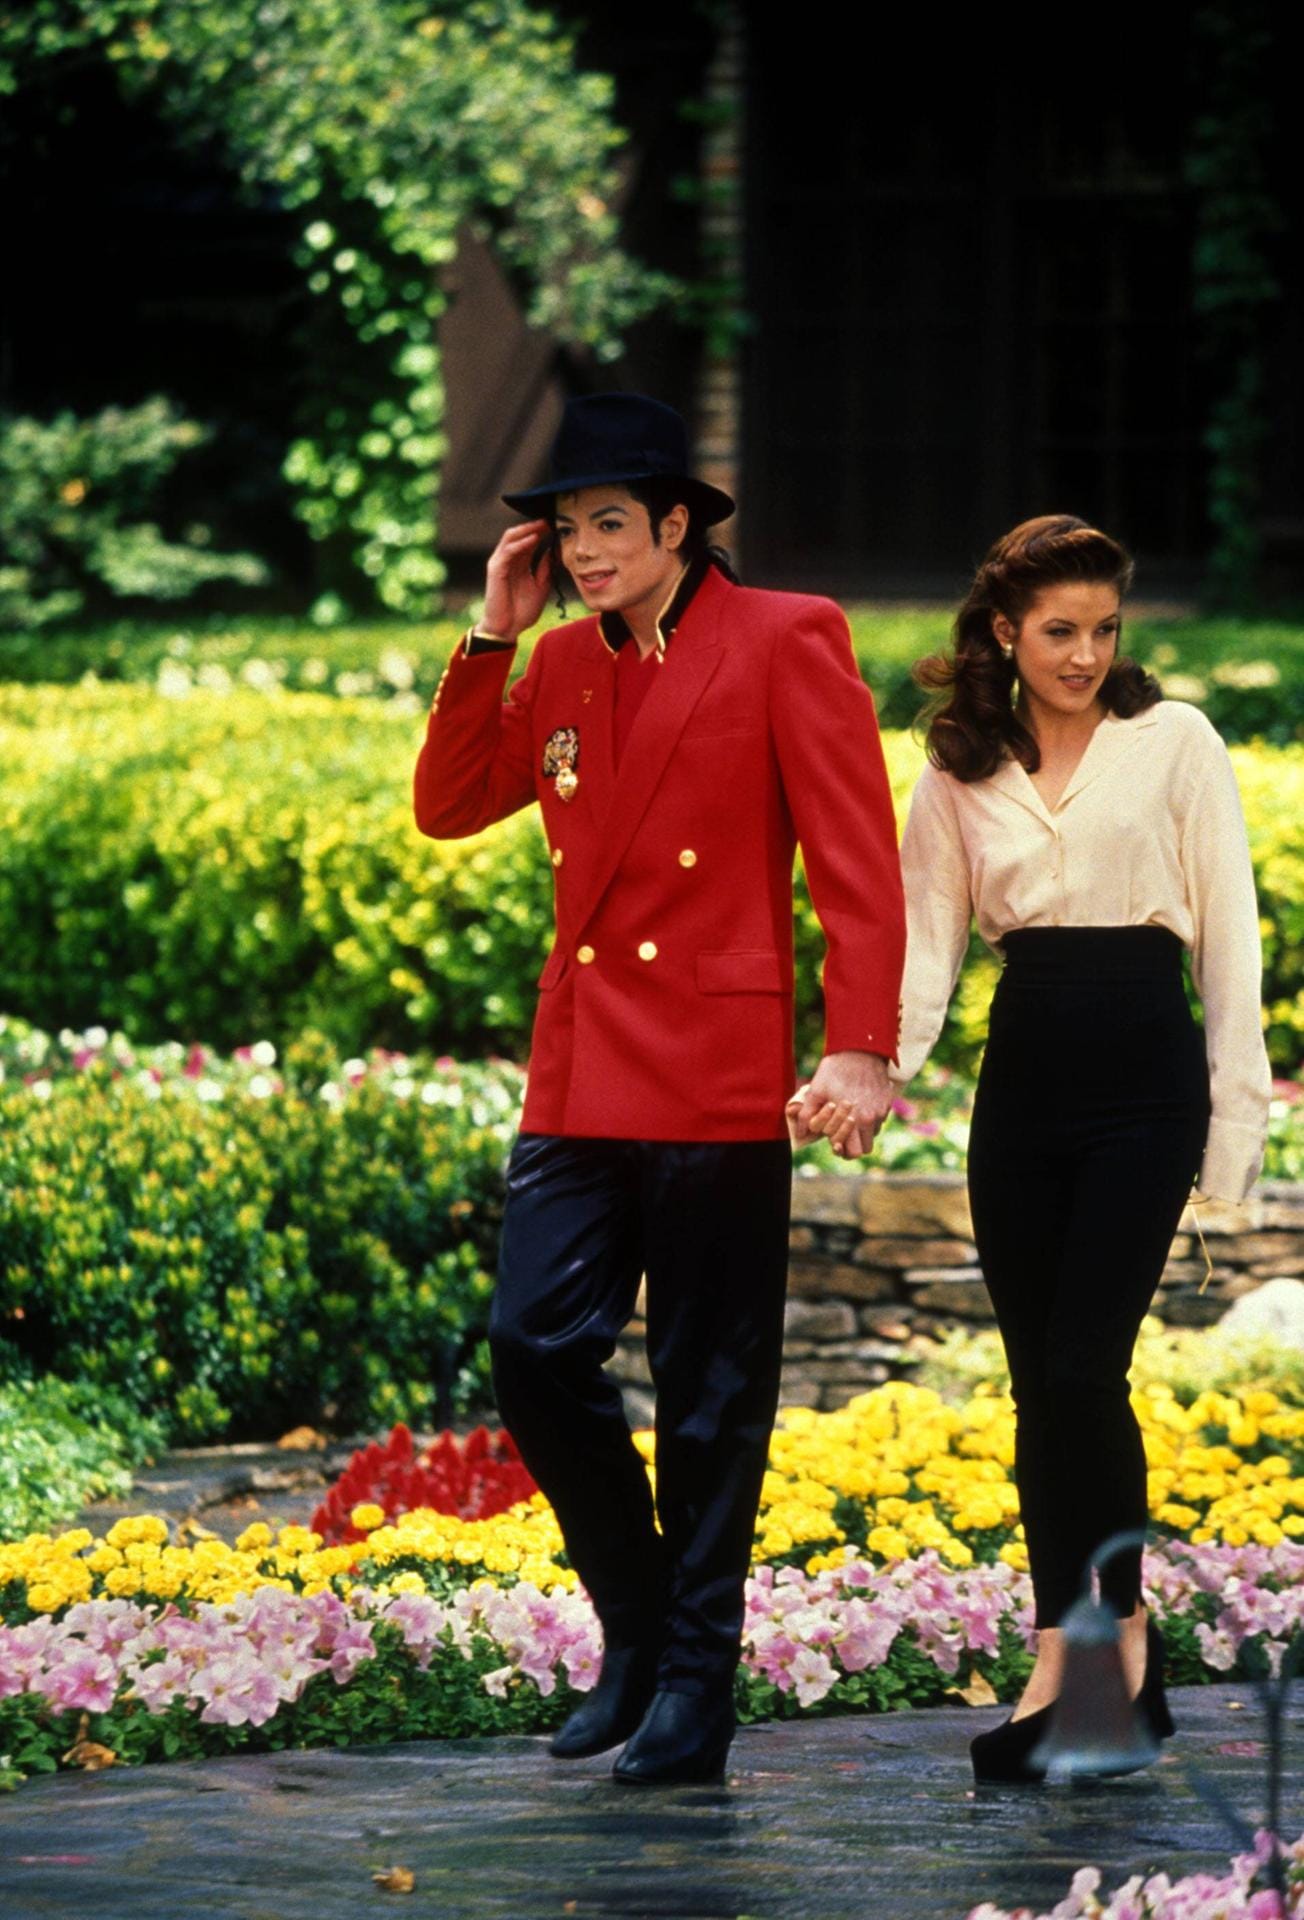 April 1995: Auf der berühmten Neverland Ranch hat das Paar einen Empfang für Kinder veranstaltet. Ein Jahr zuvor haben Michael Jackson und Lisa Marie Presley geheiratet. Nach zwei Jahren Ehe haben sich die beiden wieder getrennt.